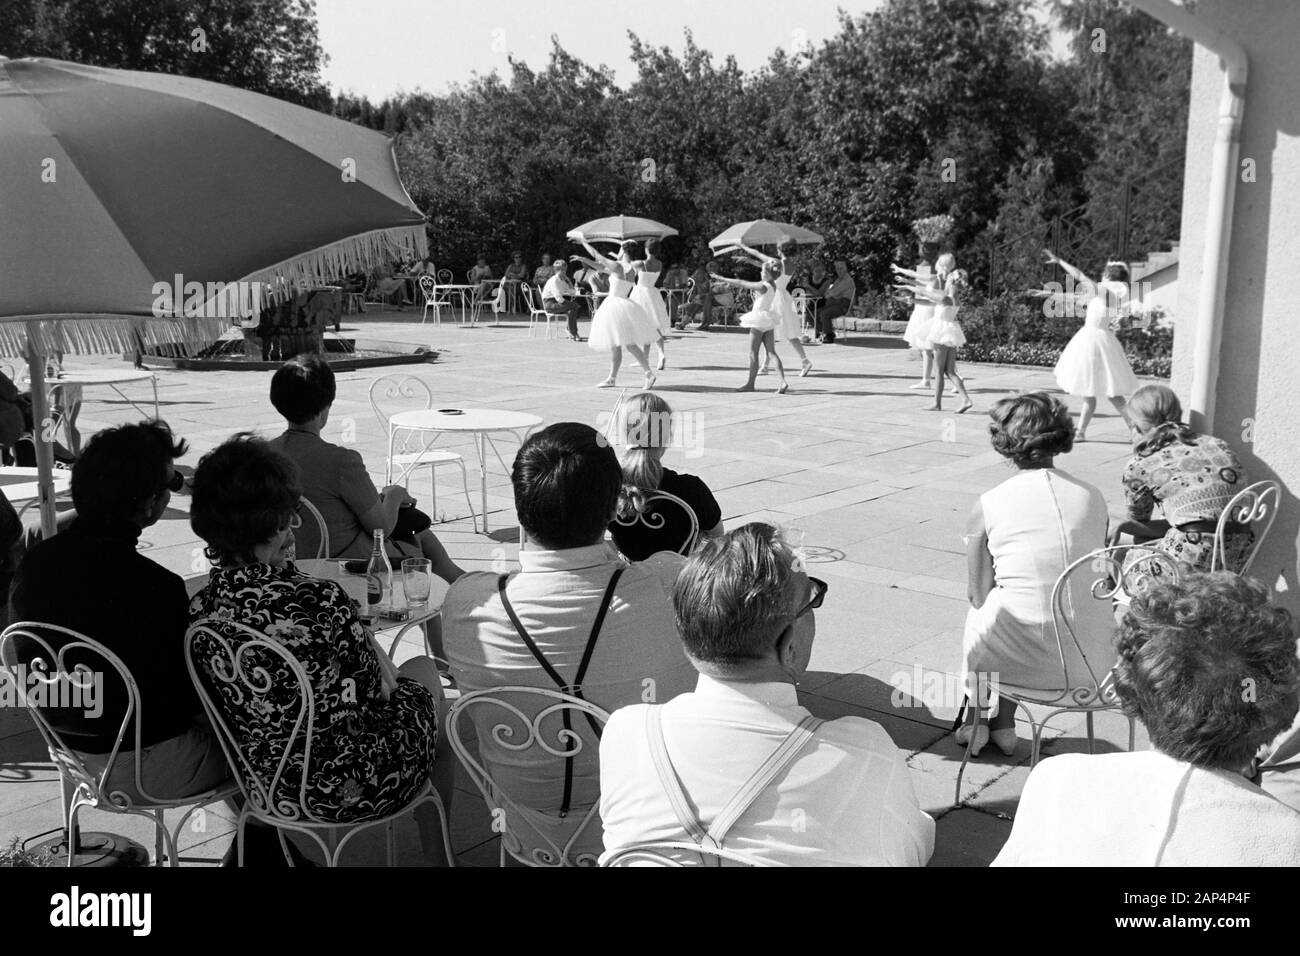 Zuschauer und Ballerinen bei einer Ballettaufführung im Parco Rottneros, 1969. Gli spettatori e ballerini in una performance di danza presso Rottneros Park, 1969. Foto Stock